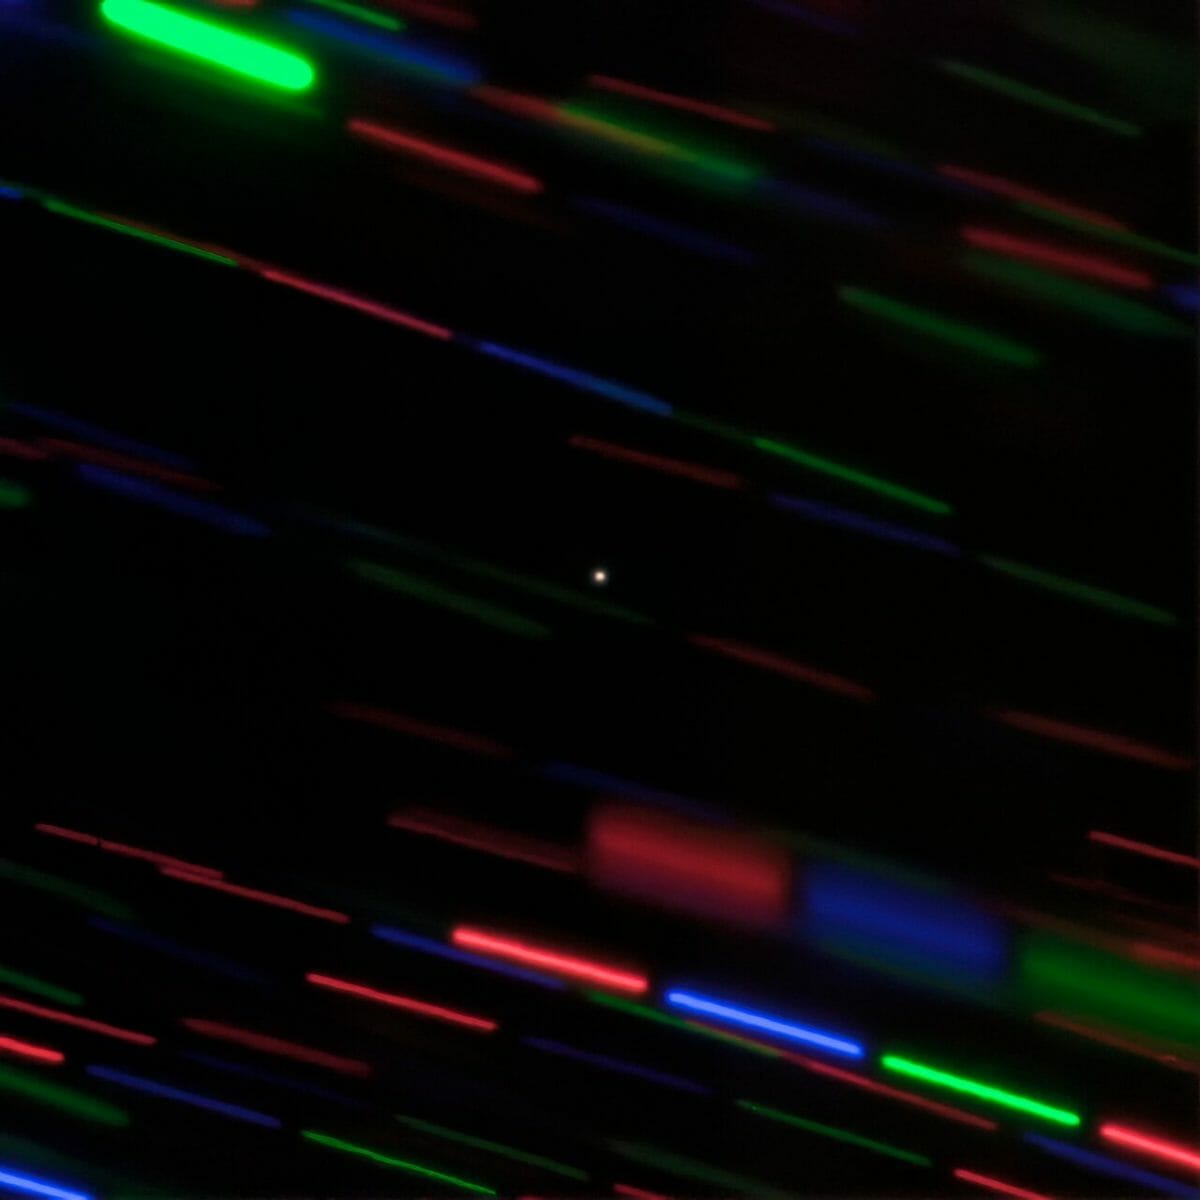 ハワイ・マウナケア山の「ジェミニ北望遠鏡」が撮影した「2020 CD3」（中央）。高速で移動する2020 CD3の動きに合わせて望遠鏡を動かしつつ三色のフィルターを切り替えながら撮影したため、背景の星々はカラフルな点線として写っている